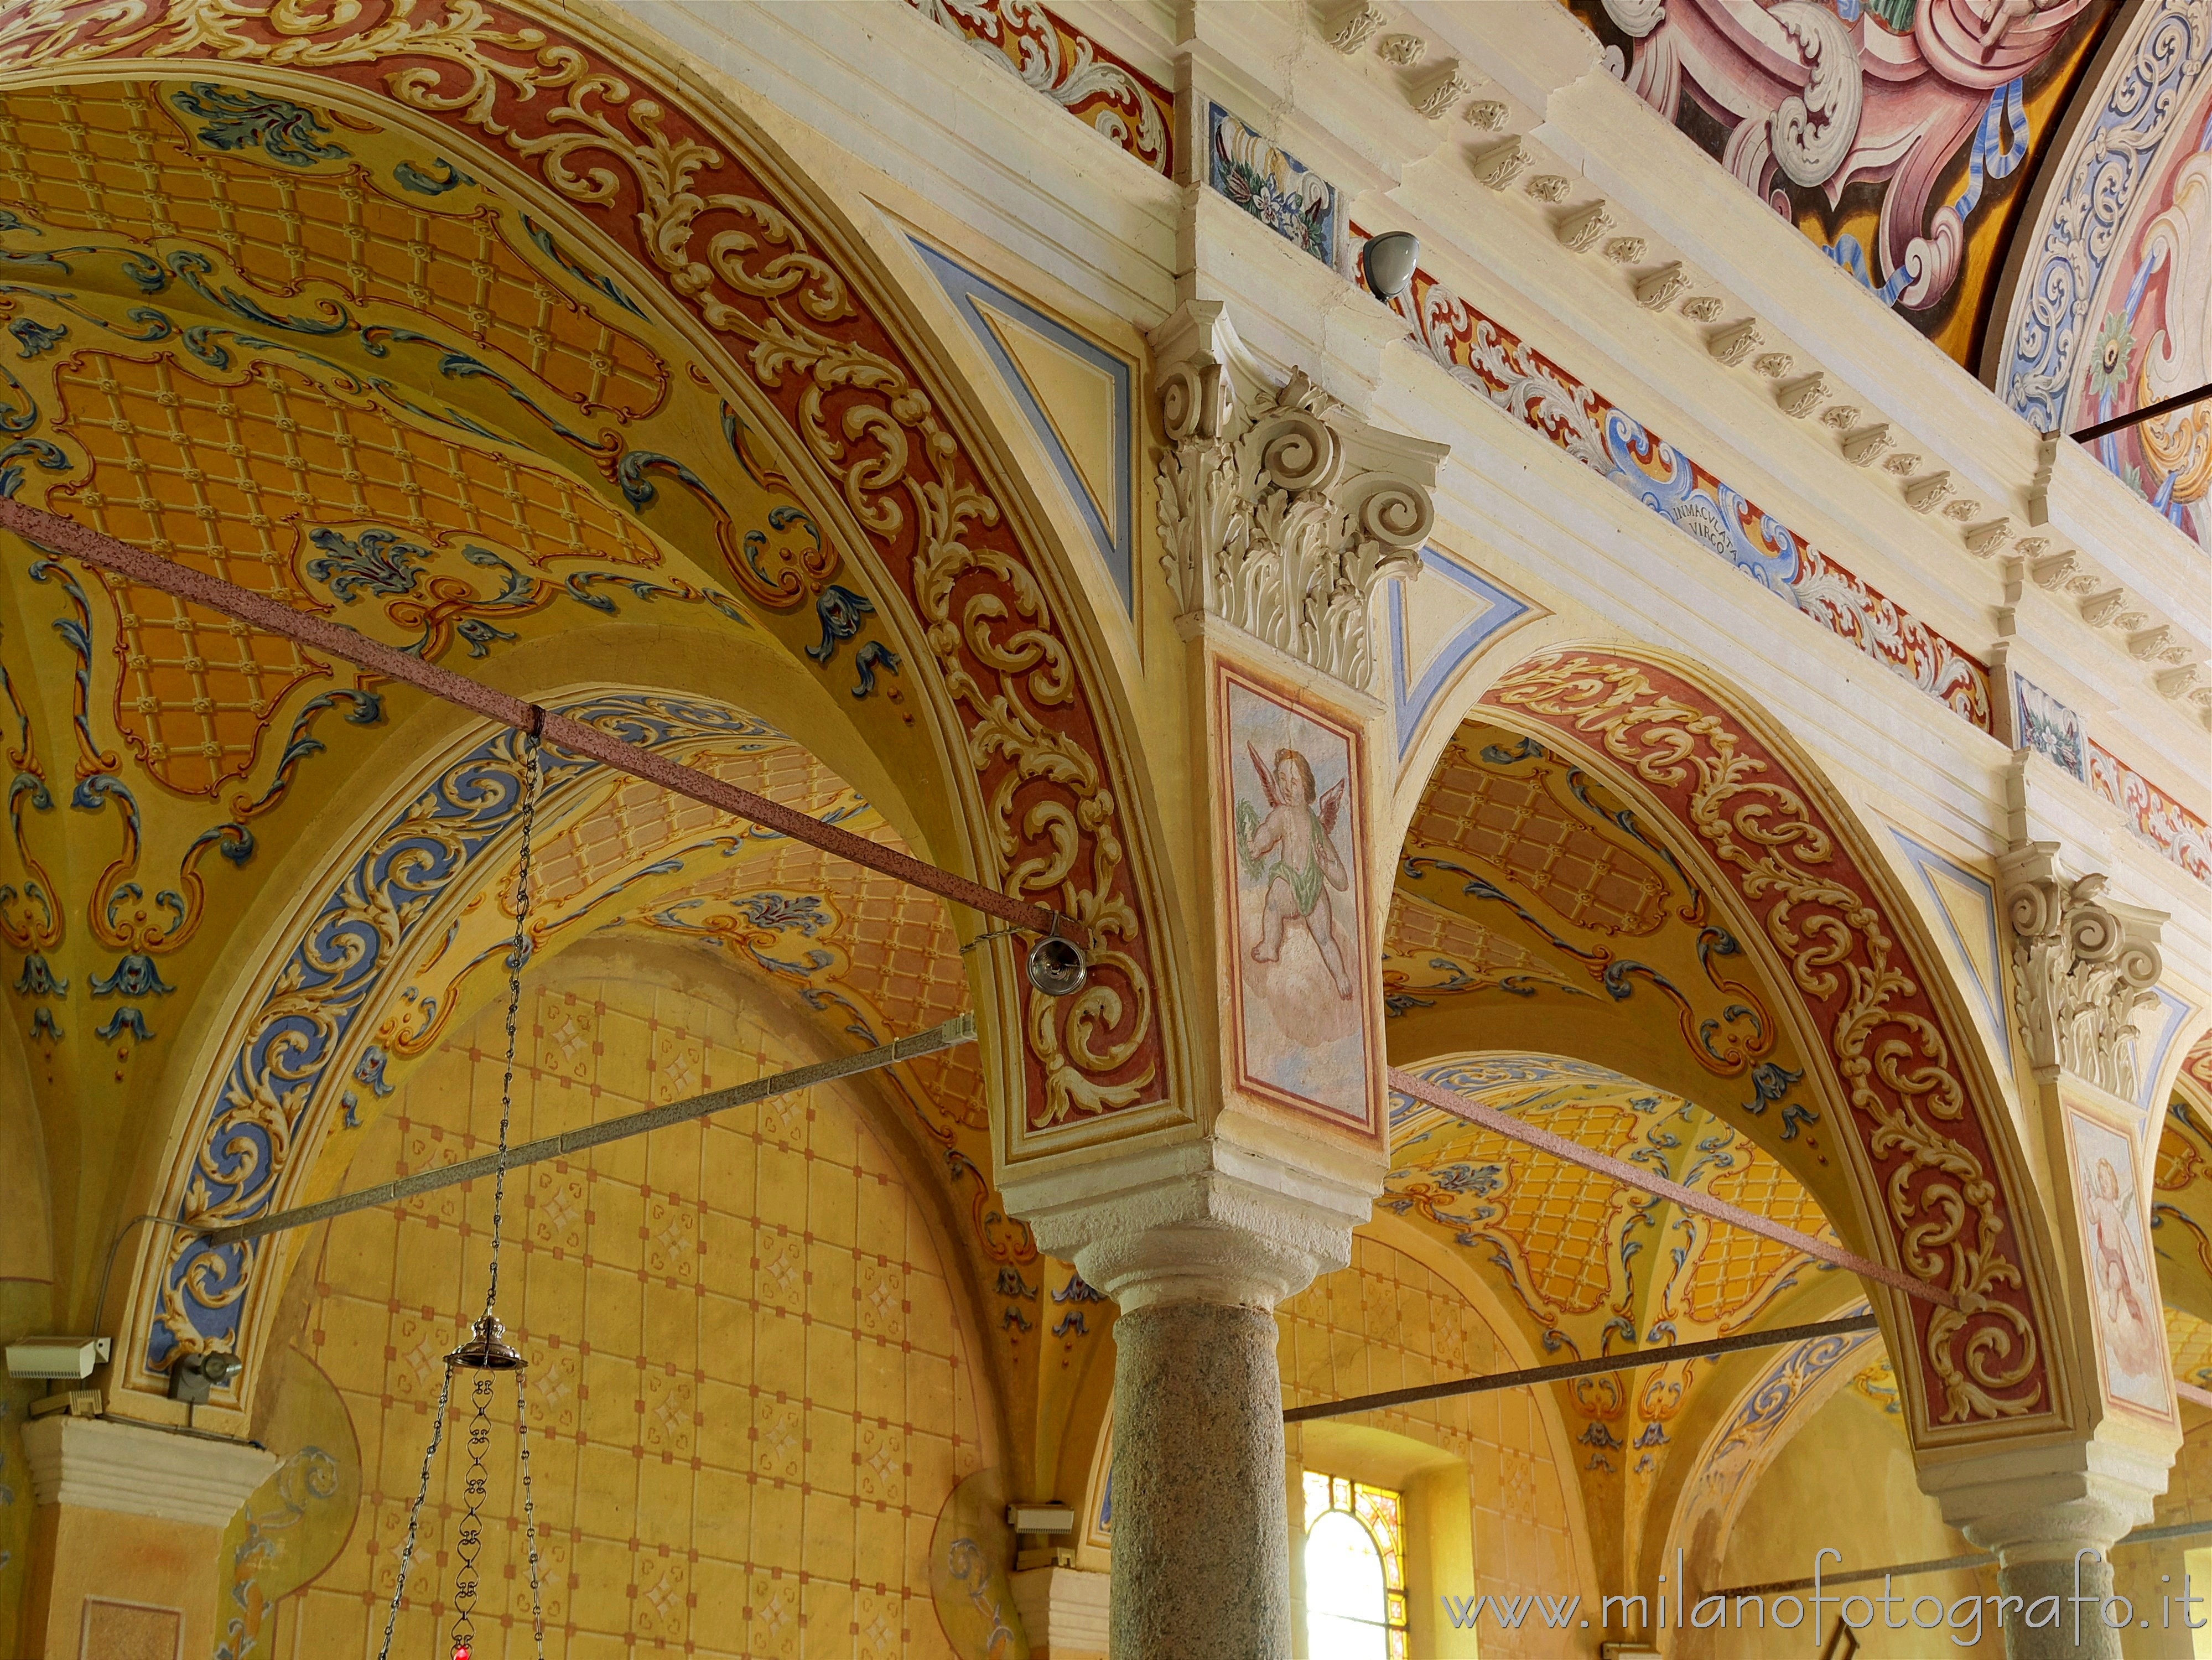 Trivero (Biella): Decorazioni barocche nella Chiesa Grande del Santuario della Brughiera Santuario della Madonna della Brughiera - Trivero (Biella)